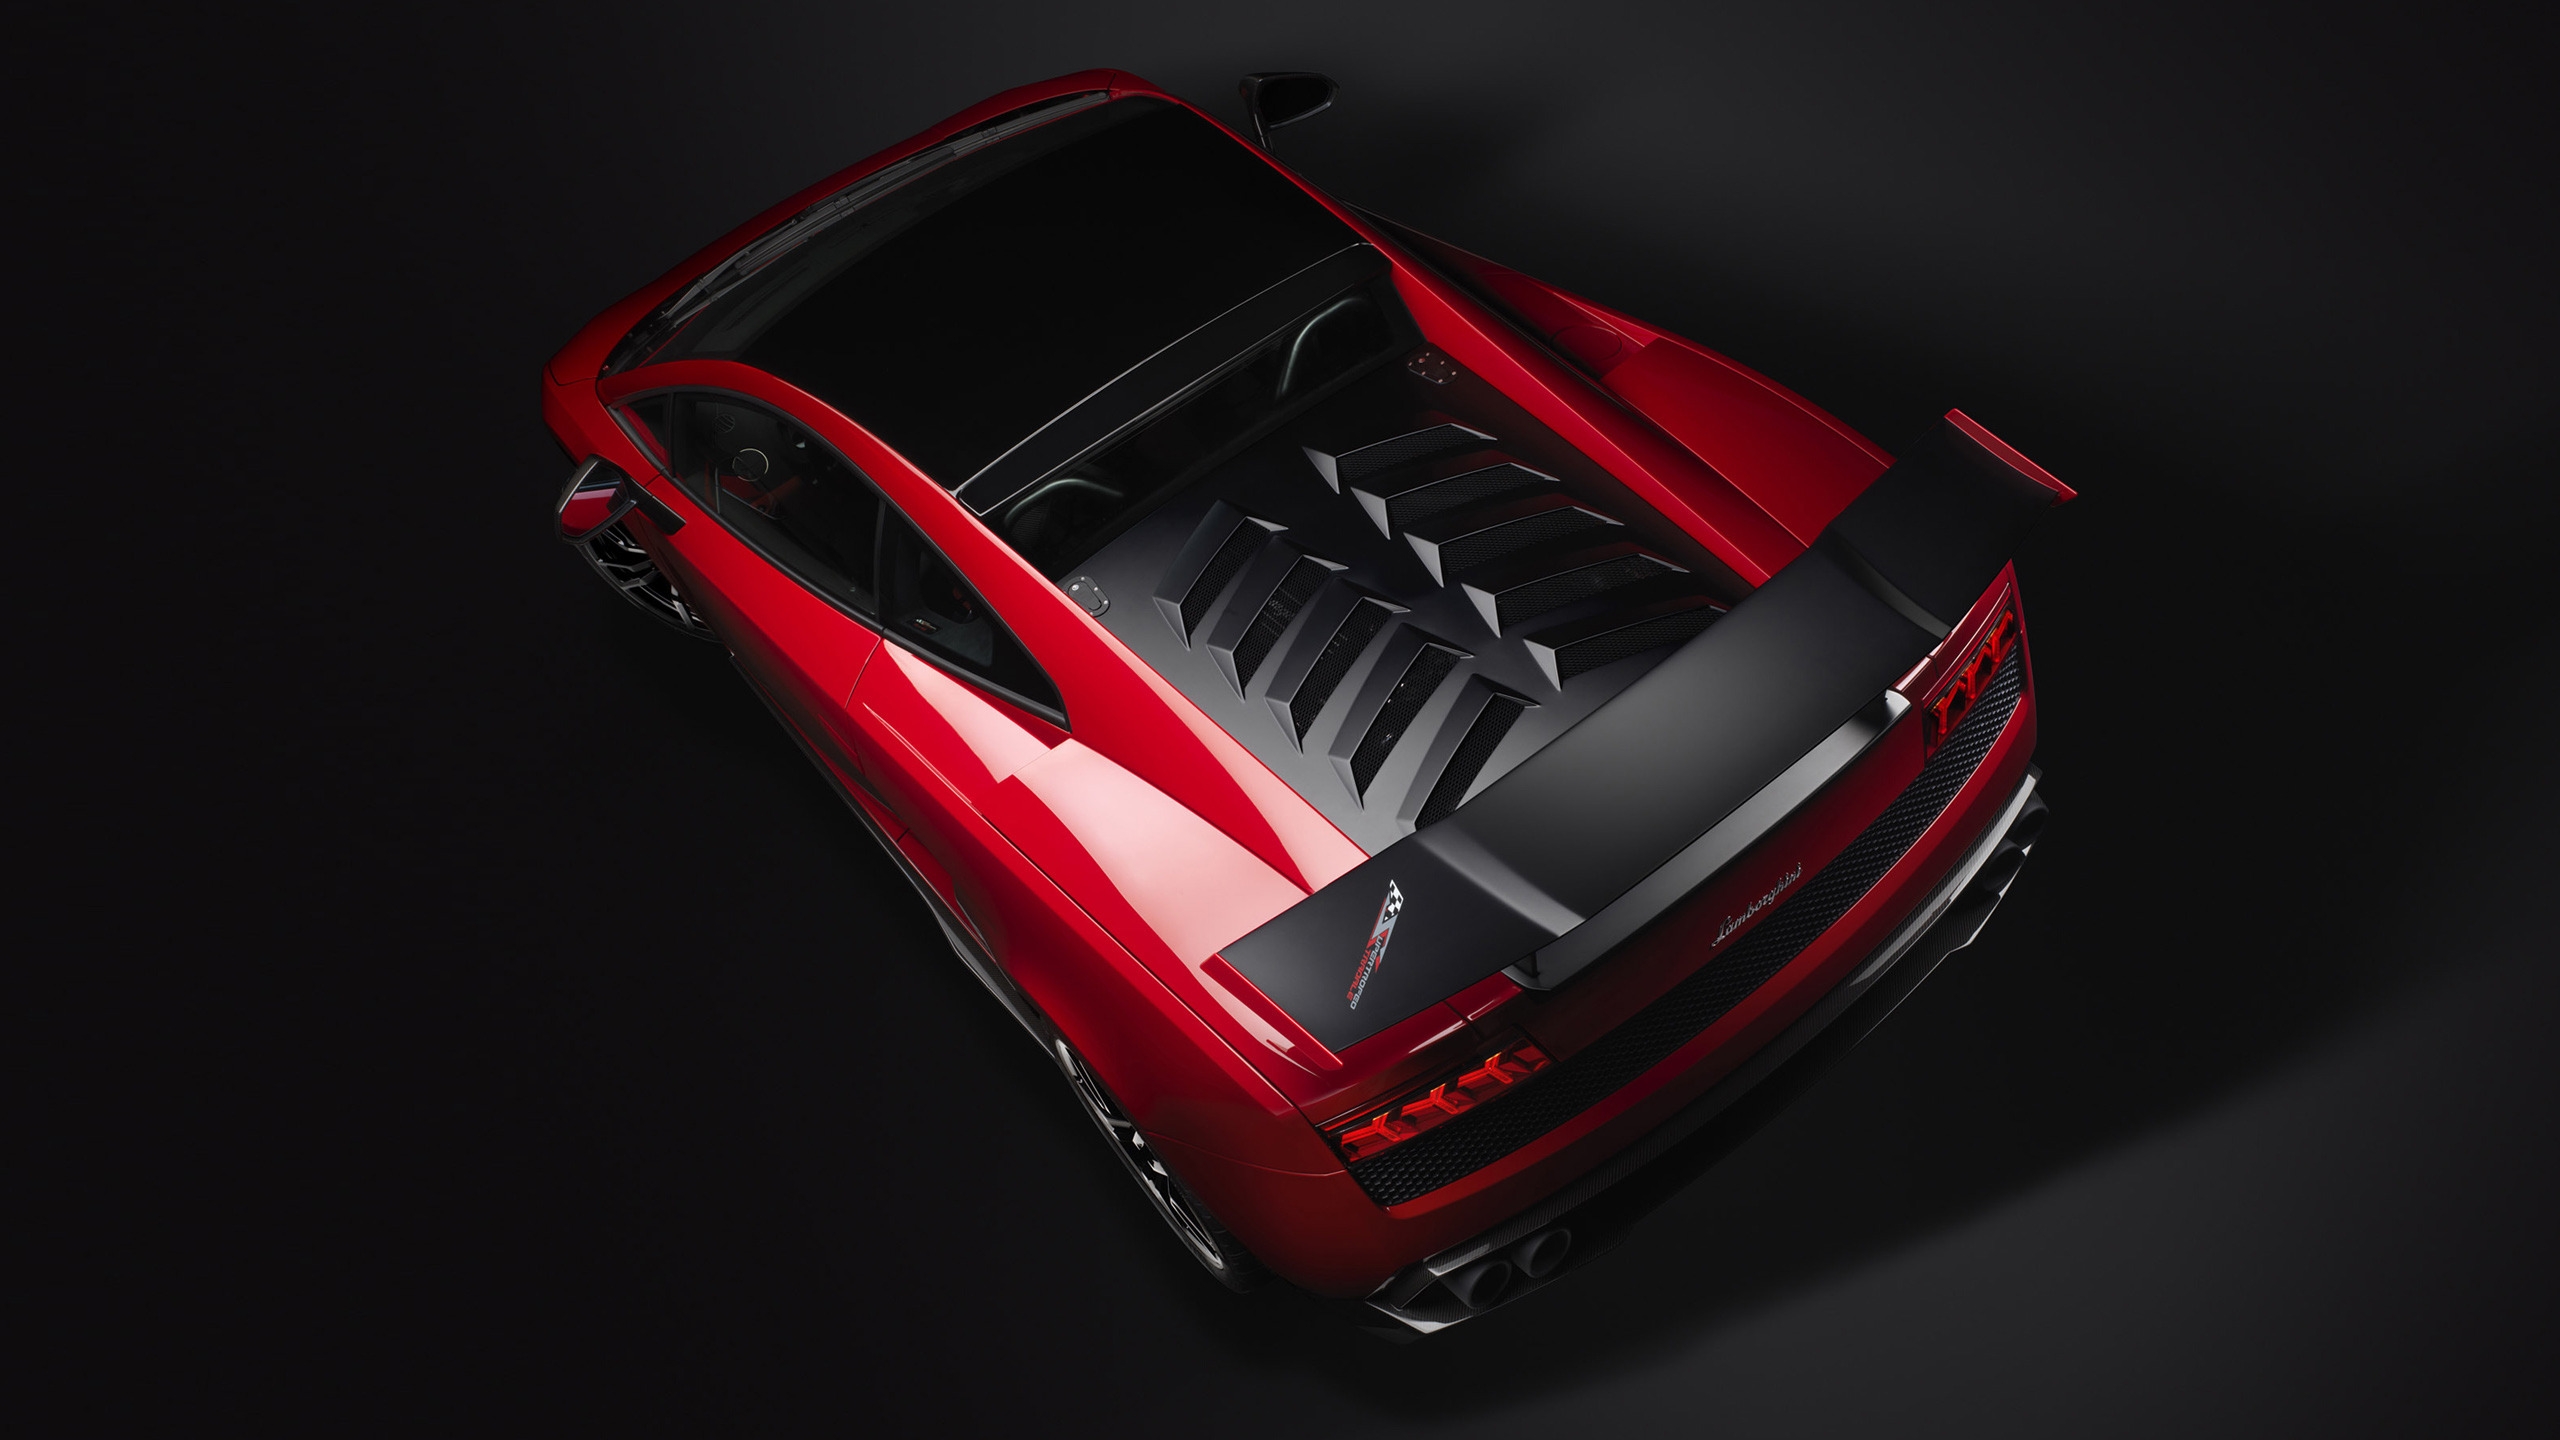 Red Lamborghini Gallardo Stradale for 2560x1440 HDTV resolution